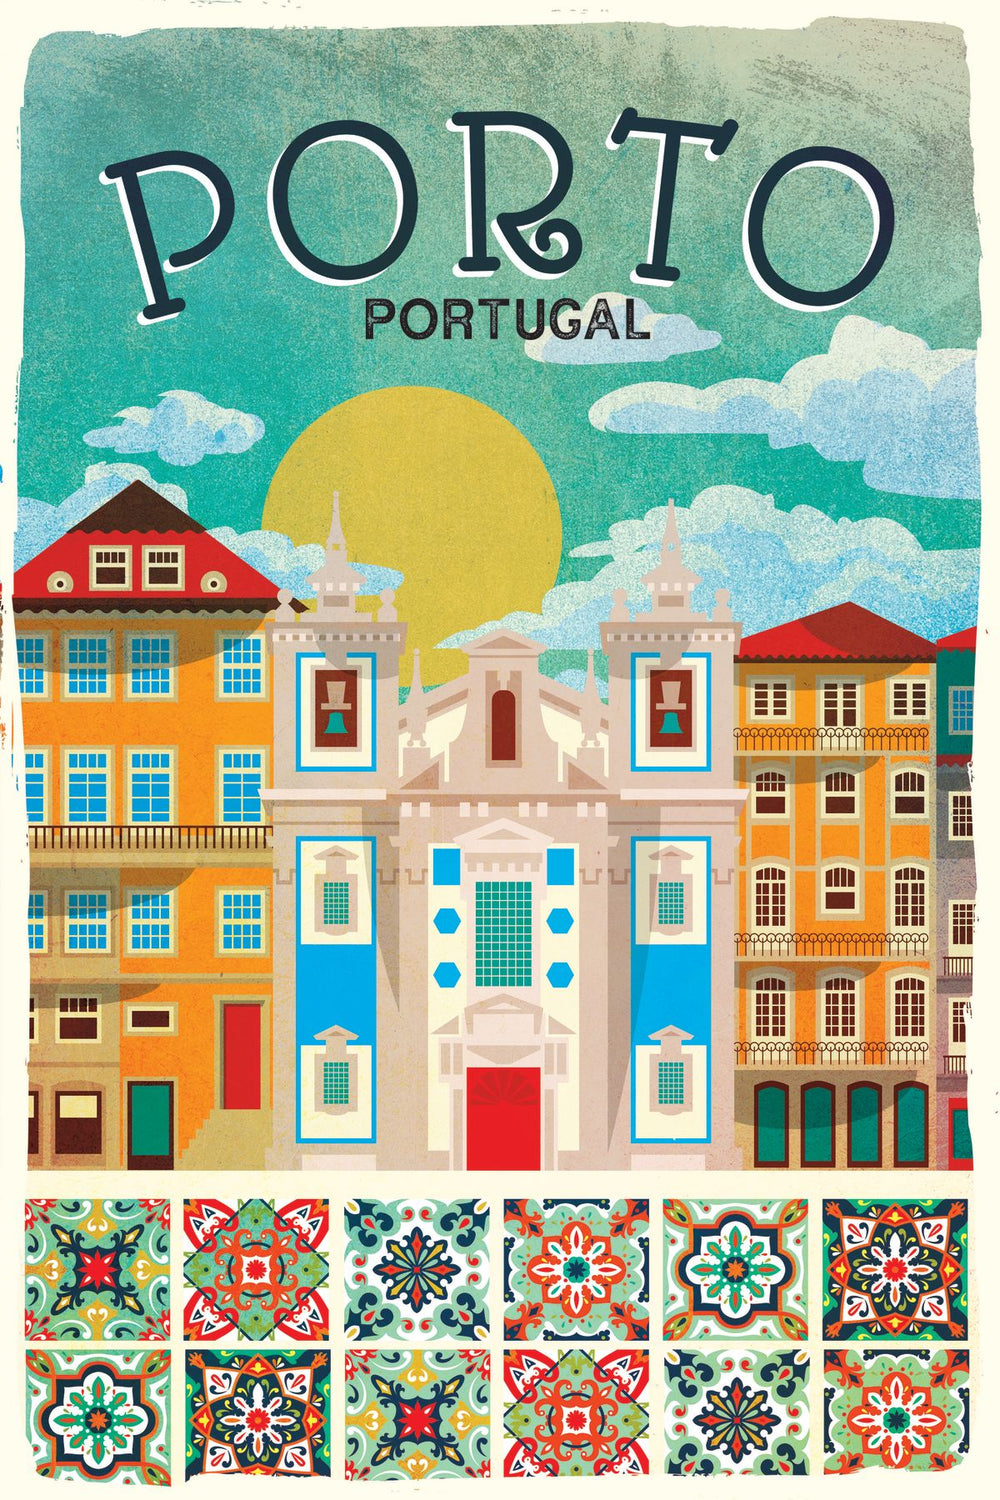 Porto Tourism Vintage Poster